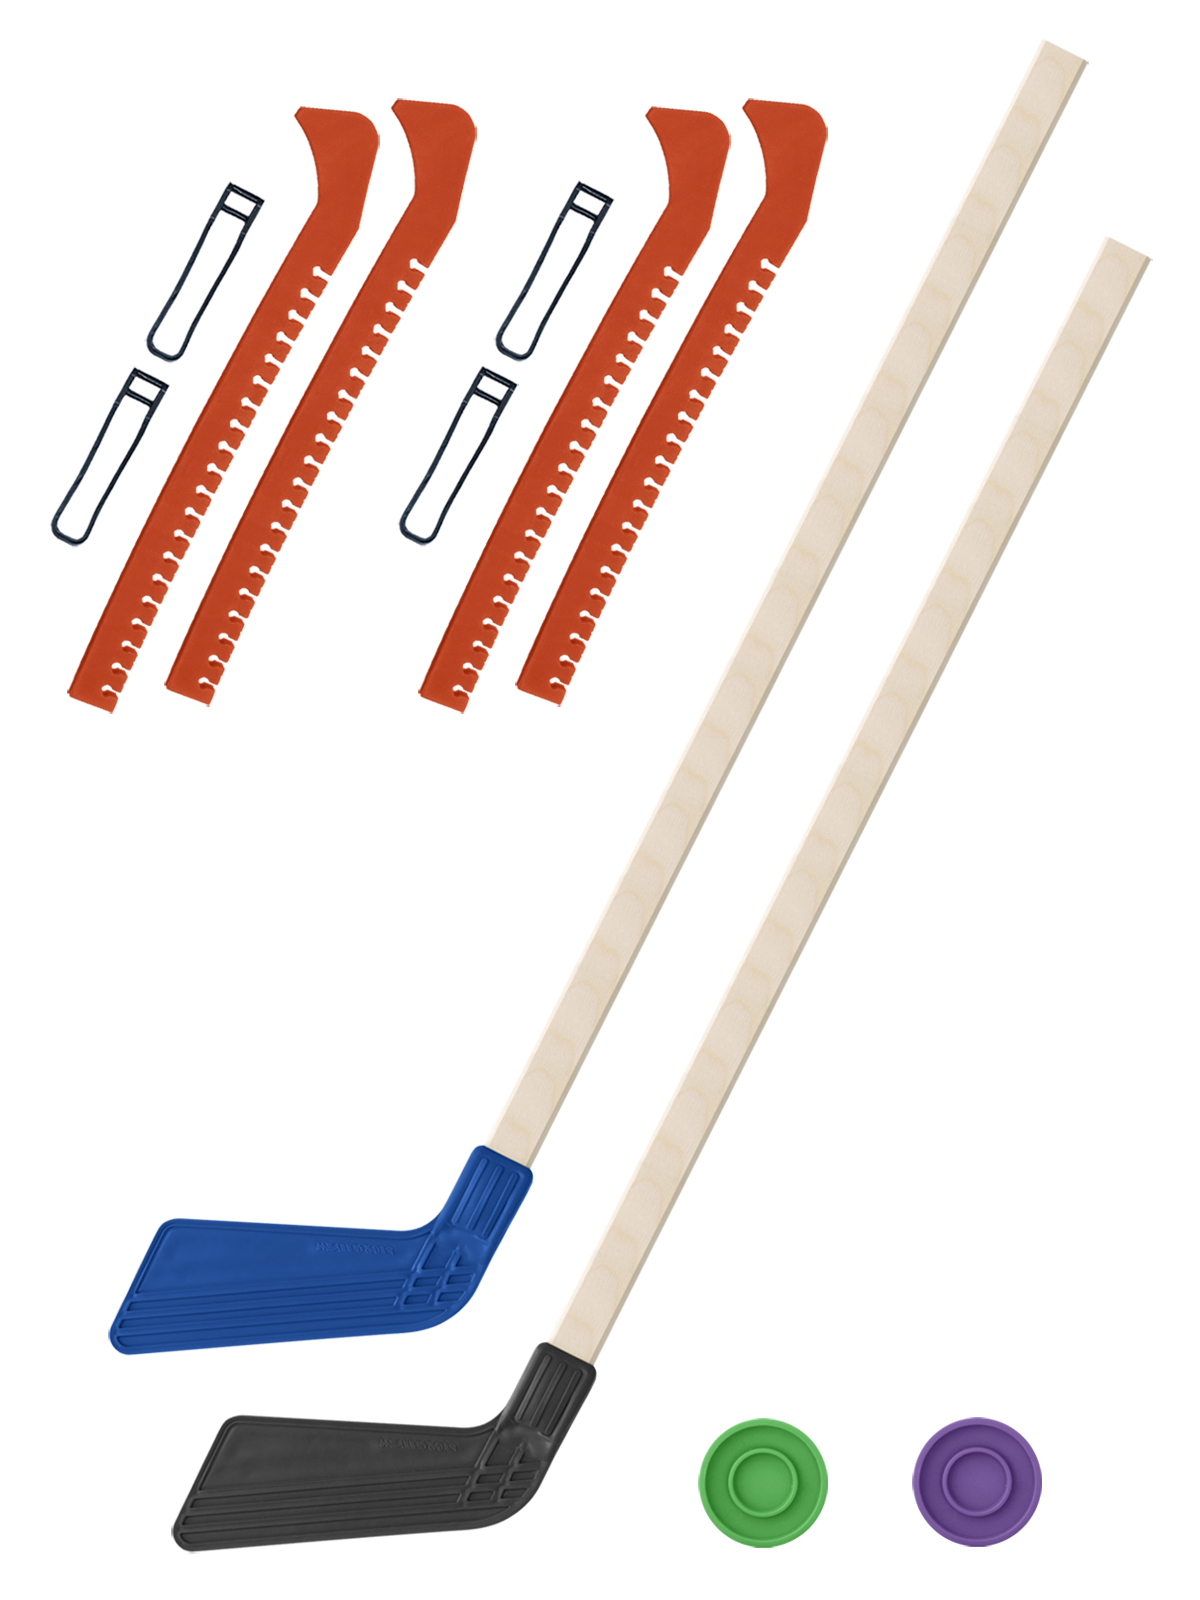 фото Клюшка хоккейная задира-плюс 2 шт синяя и чер.+2 шайбы + чехлы для коньков оранжевые 2 шт.